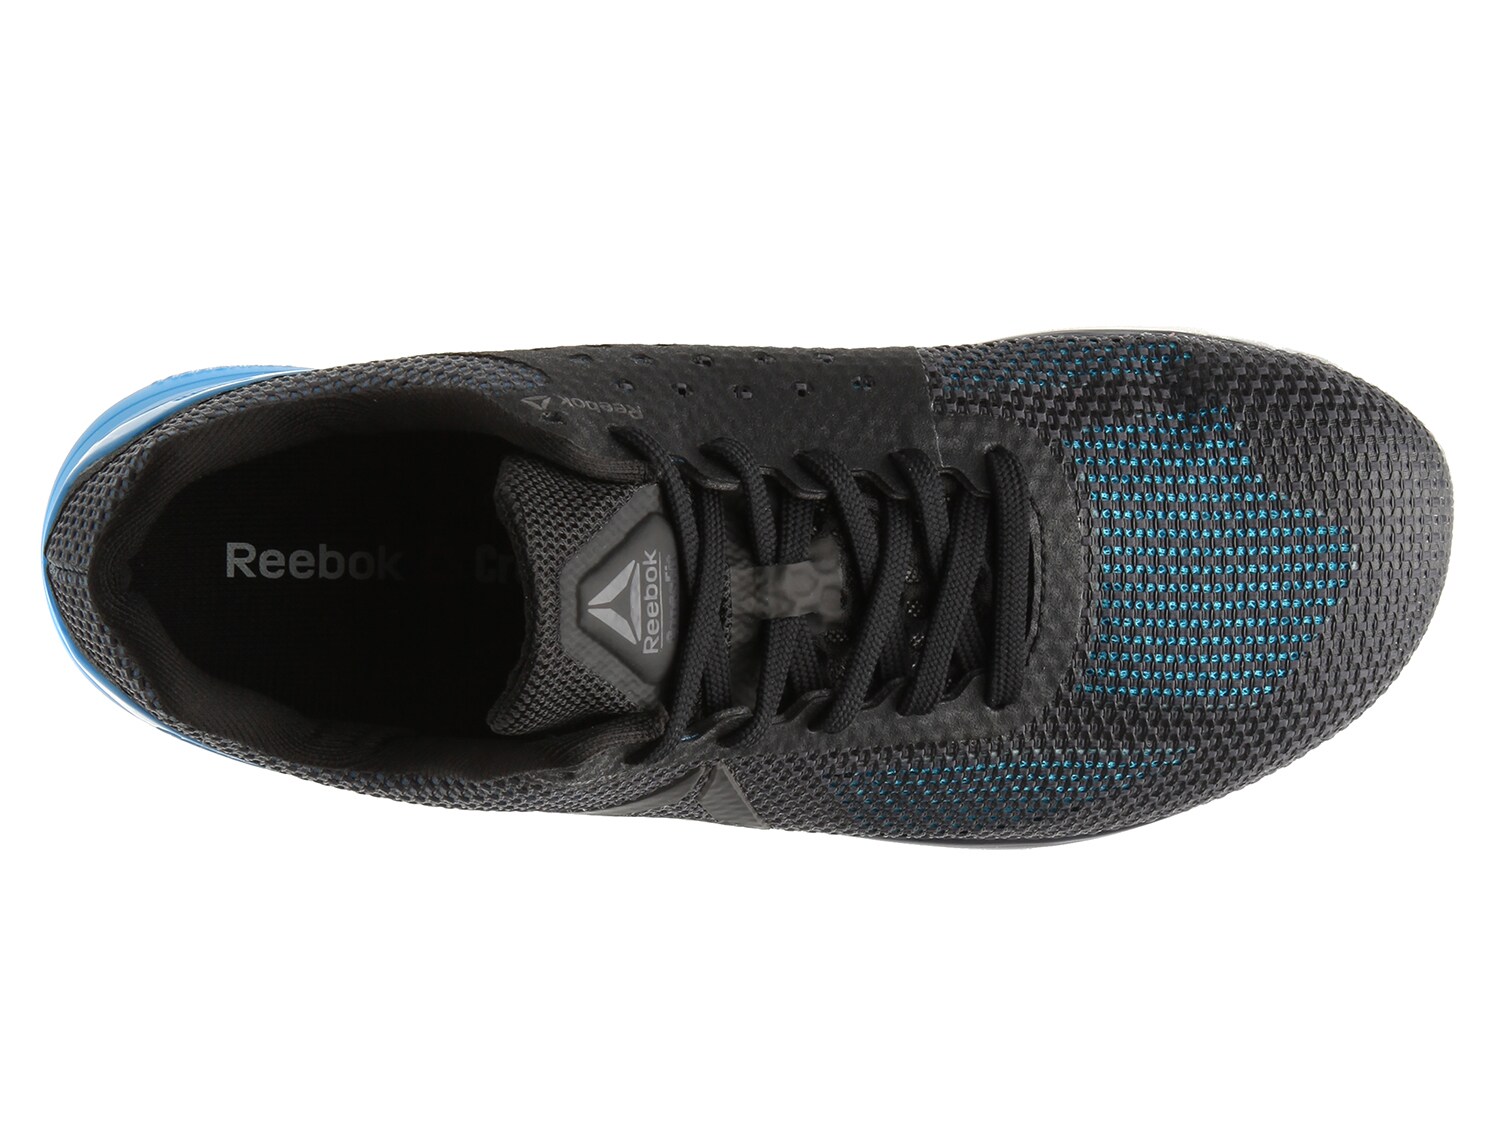 Reebok Crossfit Nano 7 Training Shoe - Men's | DSW